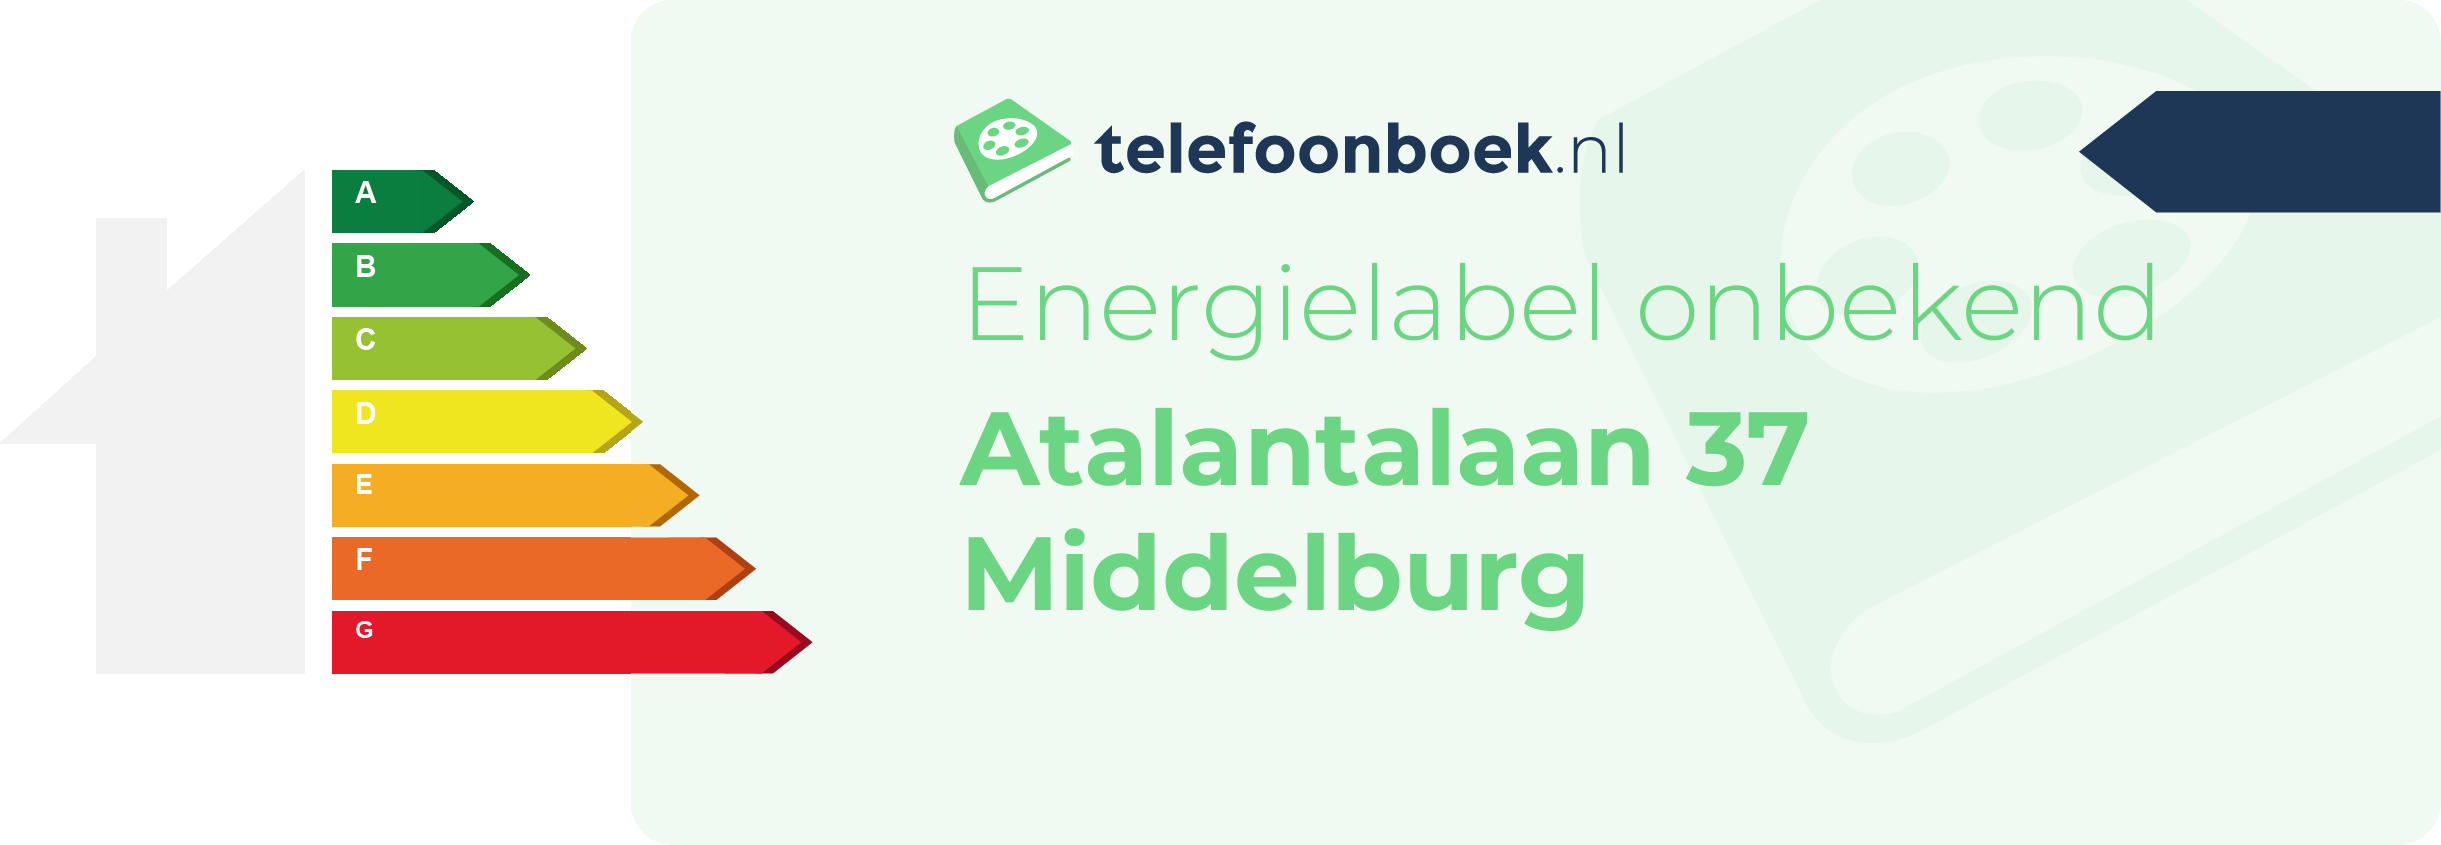 Energielabel Atalantalaan 37 Middelburg